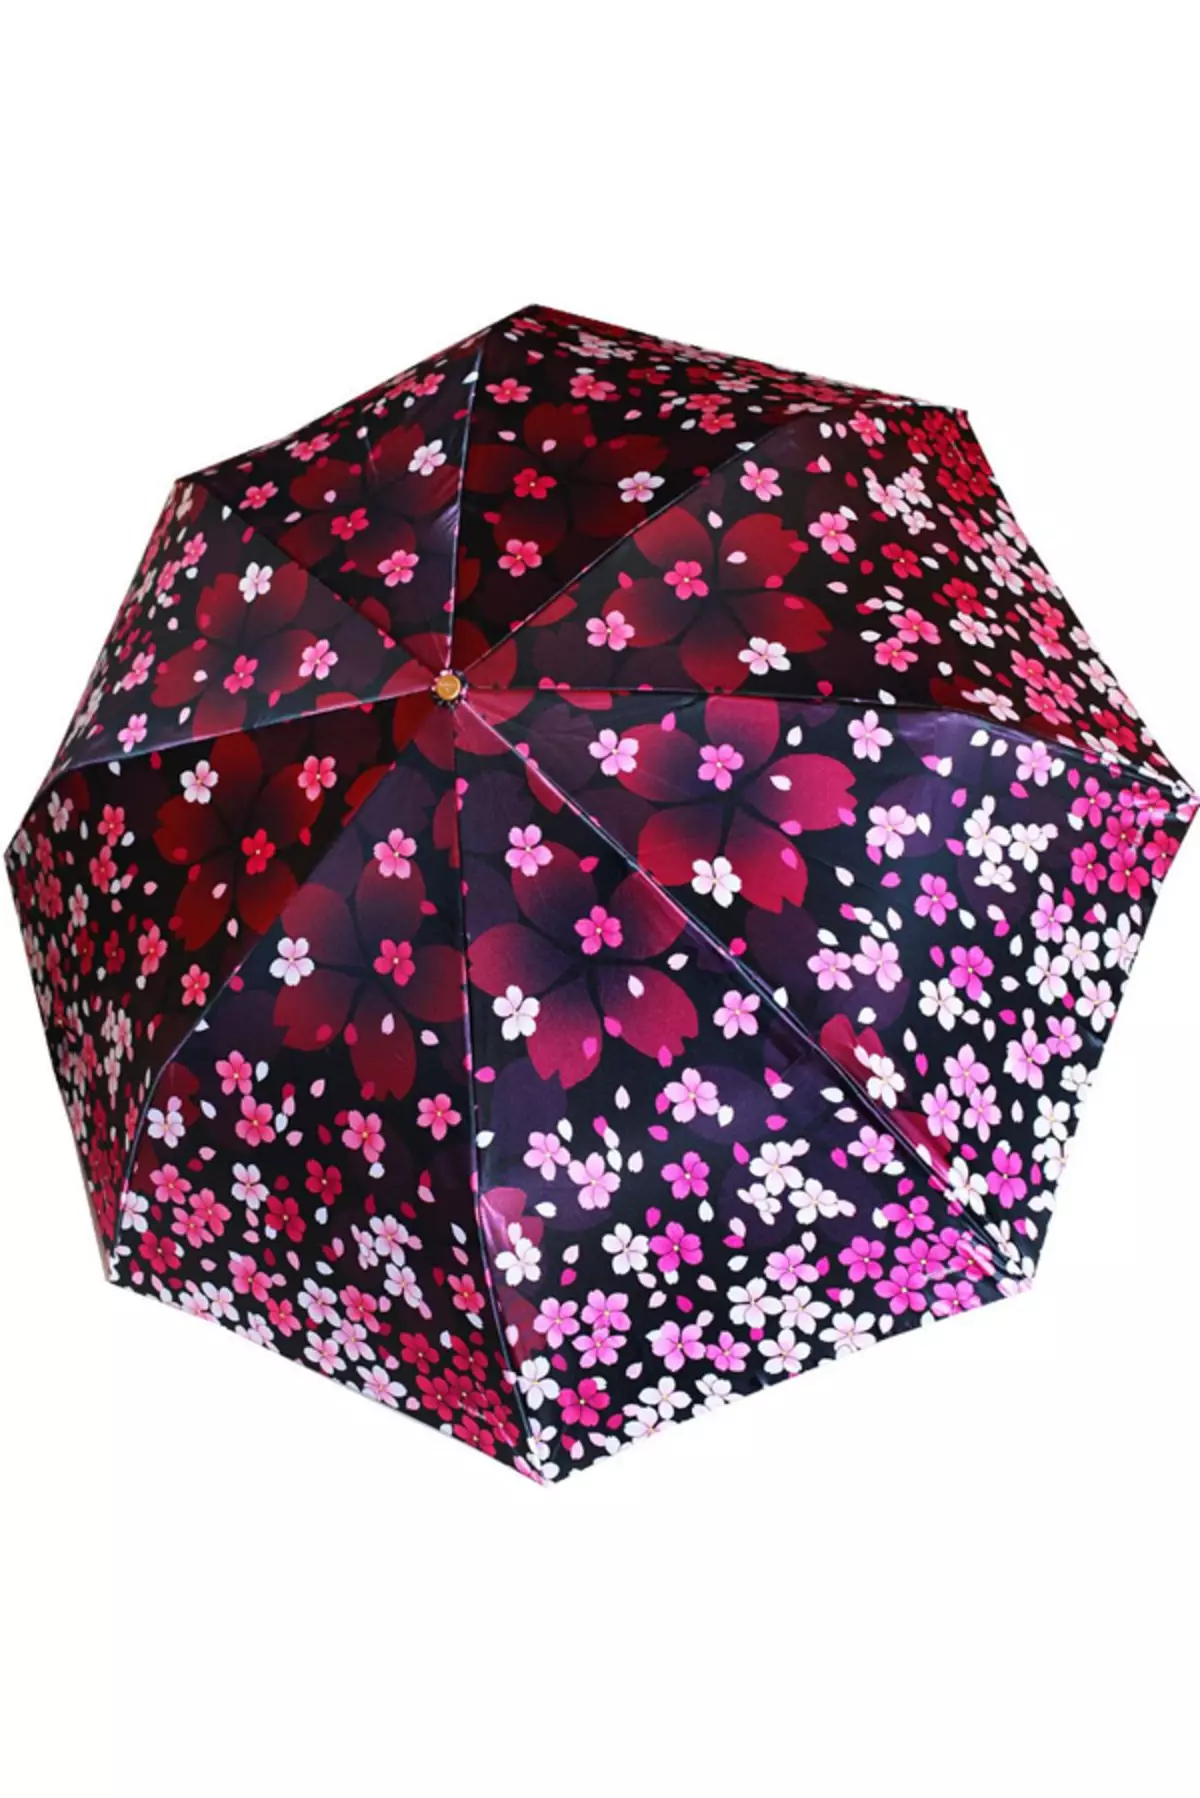 Sunbrella (linepe tse 72): Basali ba bopalai ba purwork upbrella-cane 15238_54